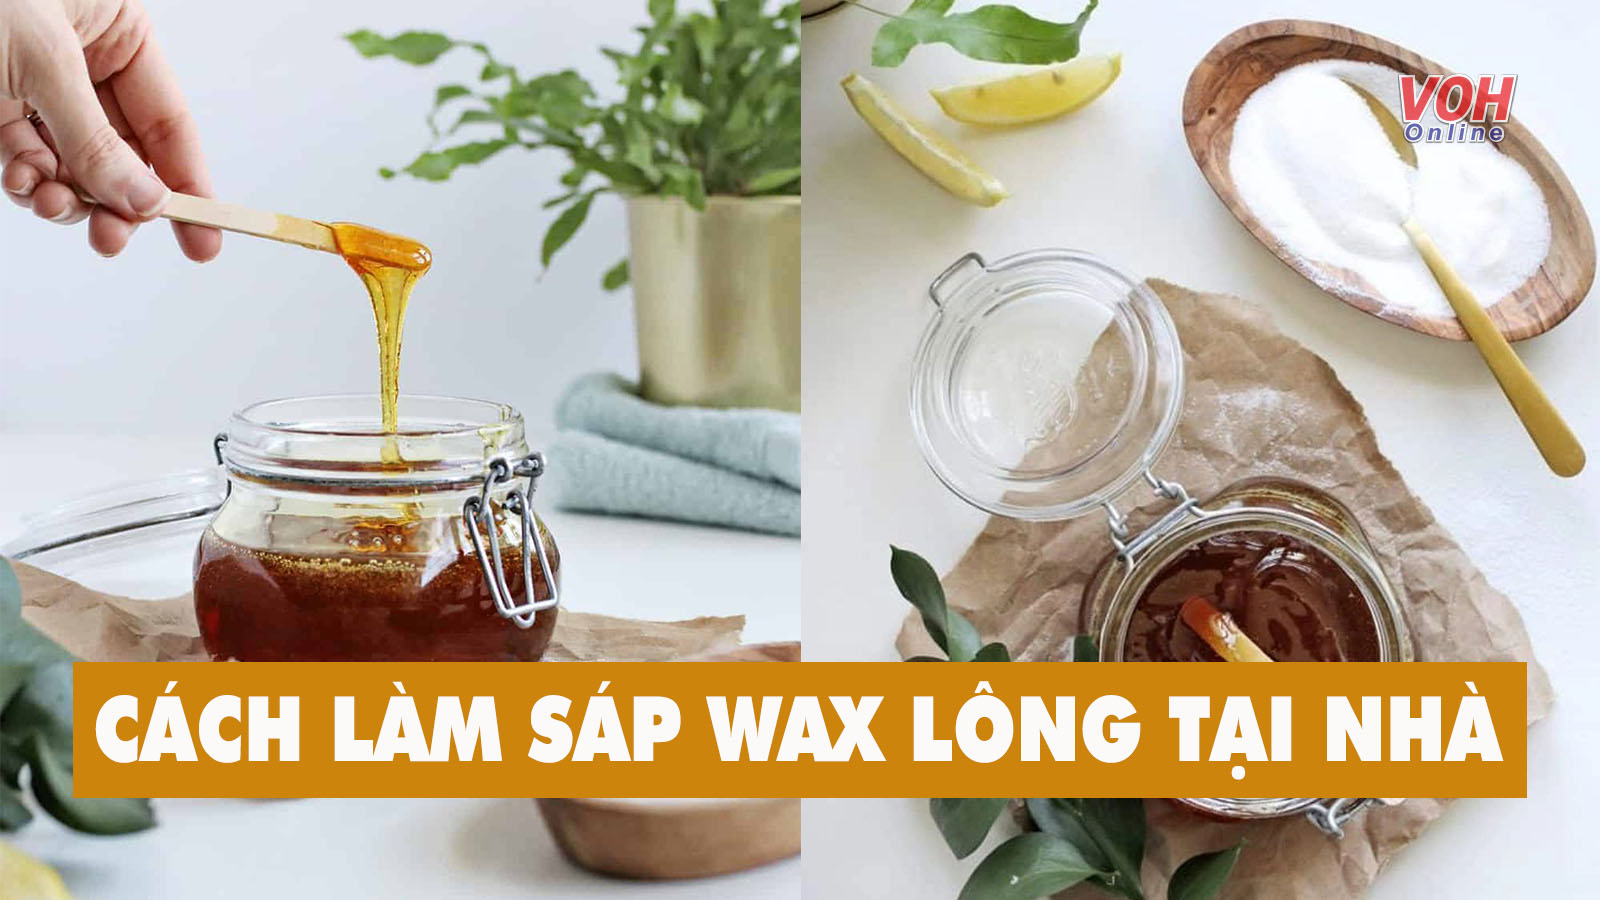 Cách làm sáp wax lông tại nhà đơn giản, tiết kiệm nhưng hiệu quả không kém spa